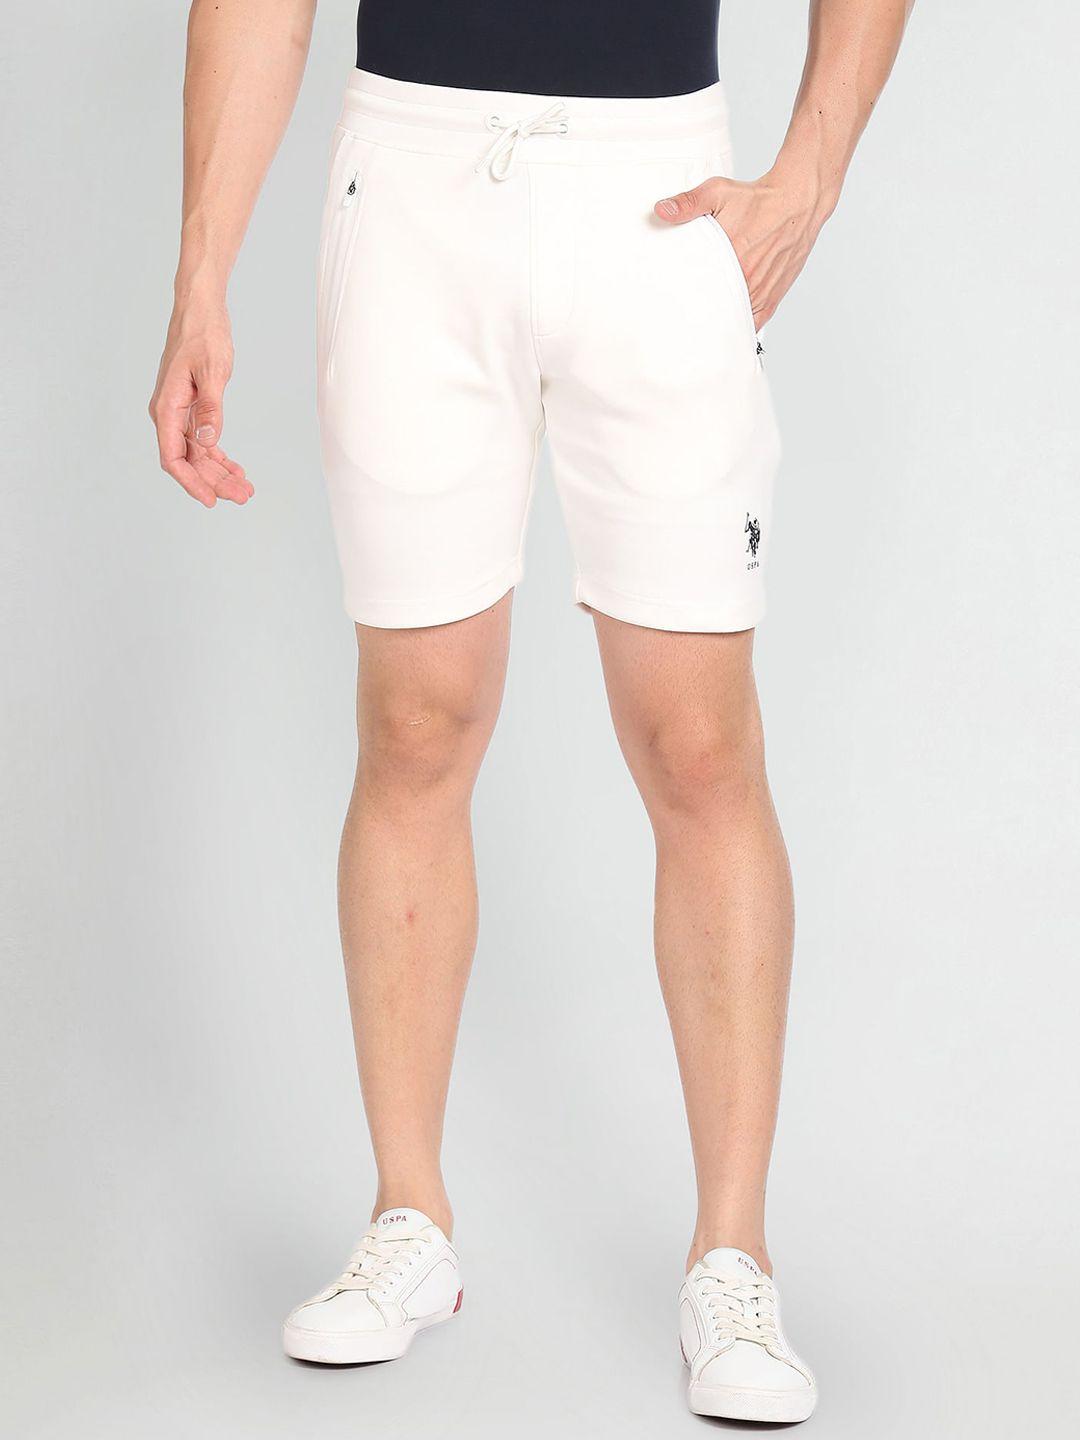 u.s. polo assn. men mid rise regular shorts